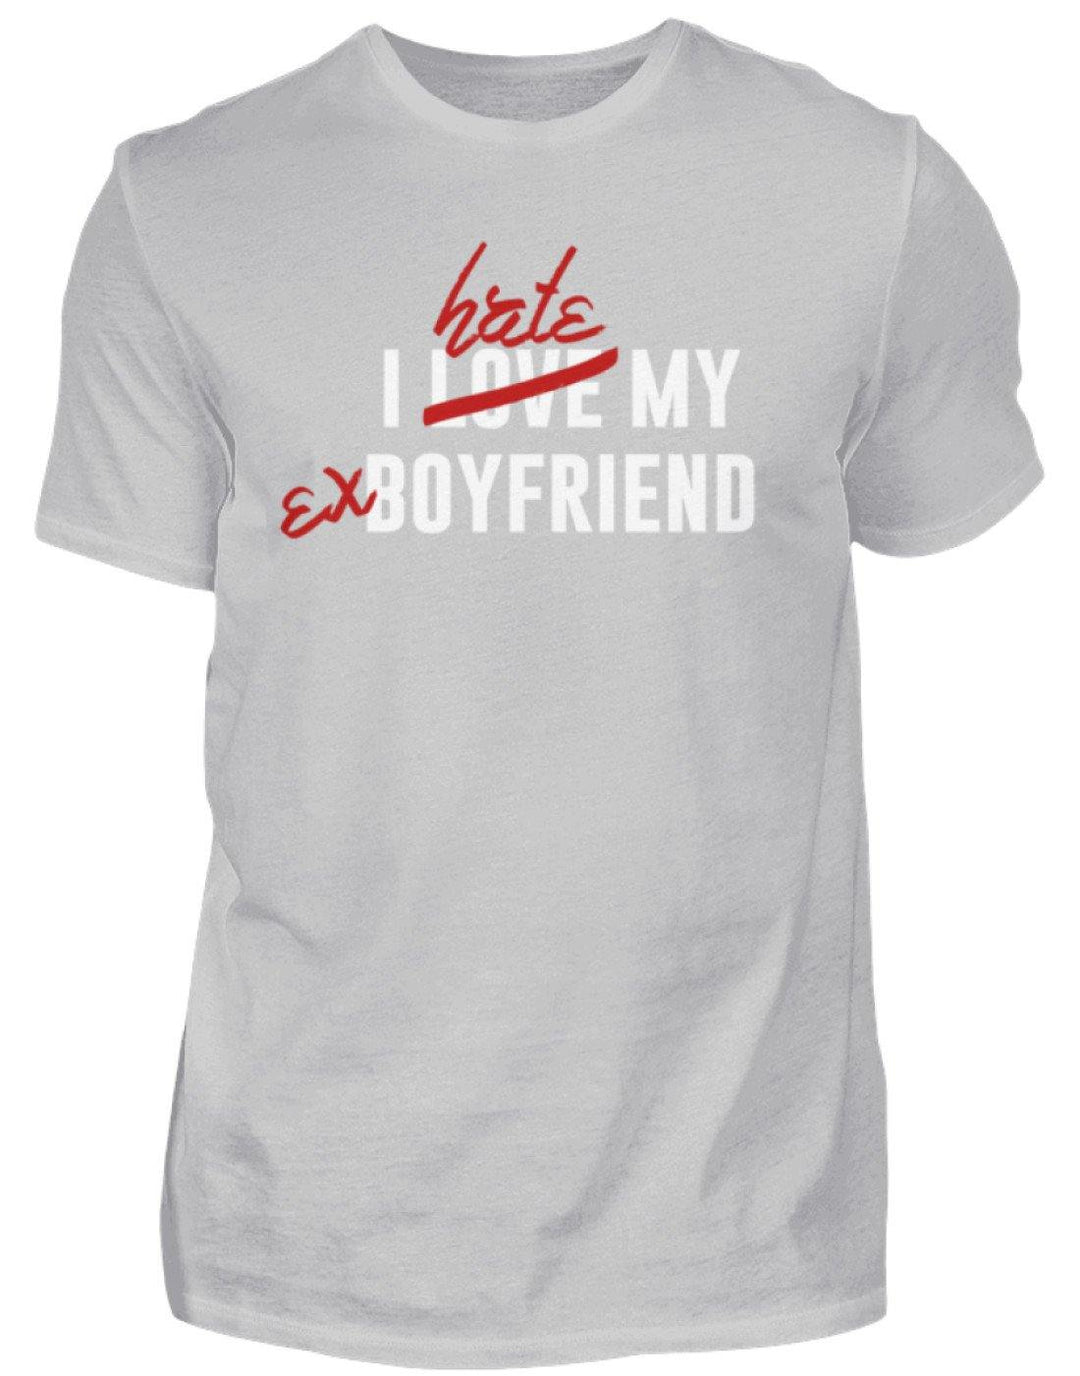 I Love My Boyfriend  - Herren Shirt - Words on Shirts Sag es mit dem Mittelfinger Shirts Hoodies Sweatshirt Taschen Gymsack Spruch Sprüche Statement